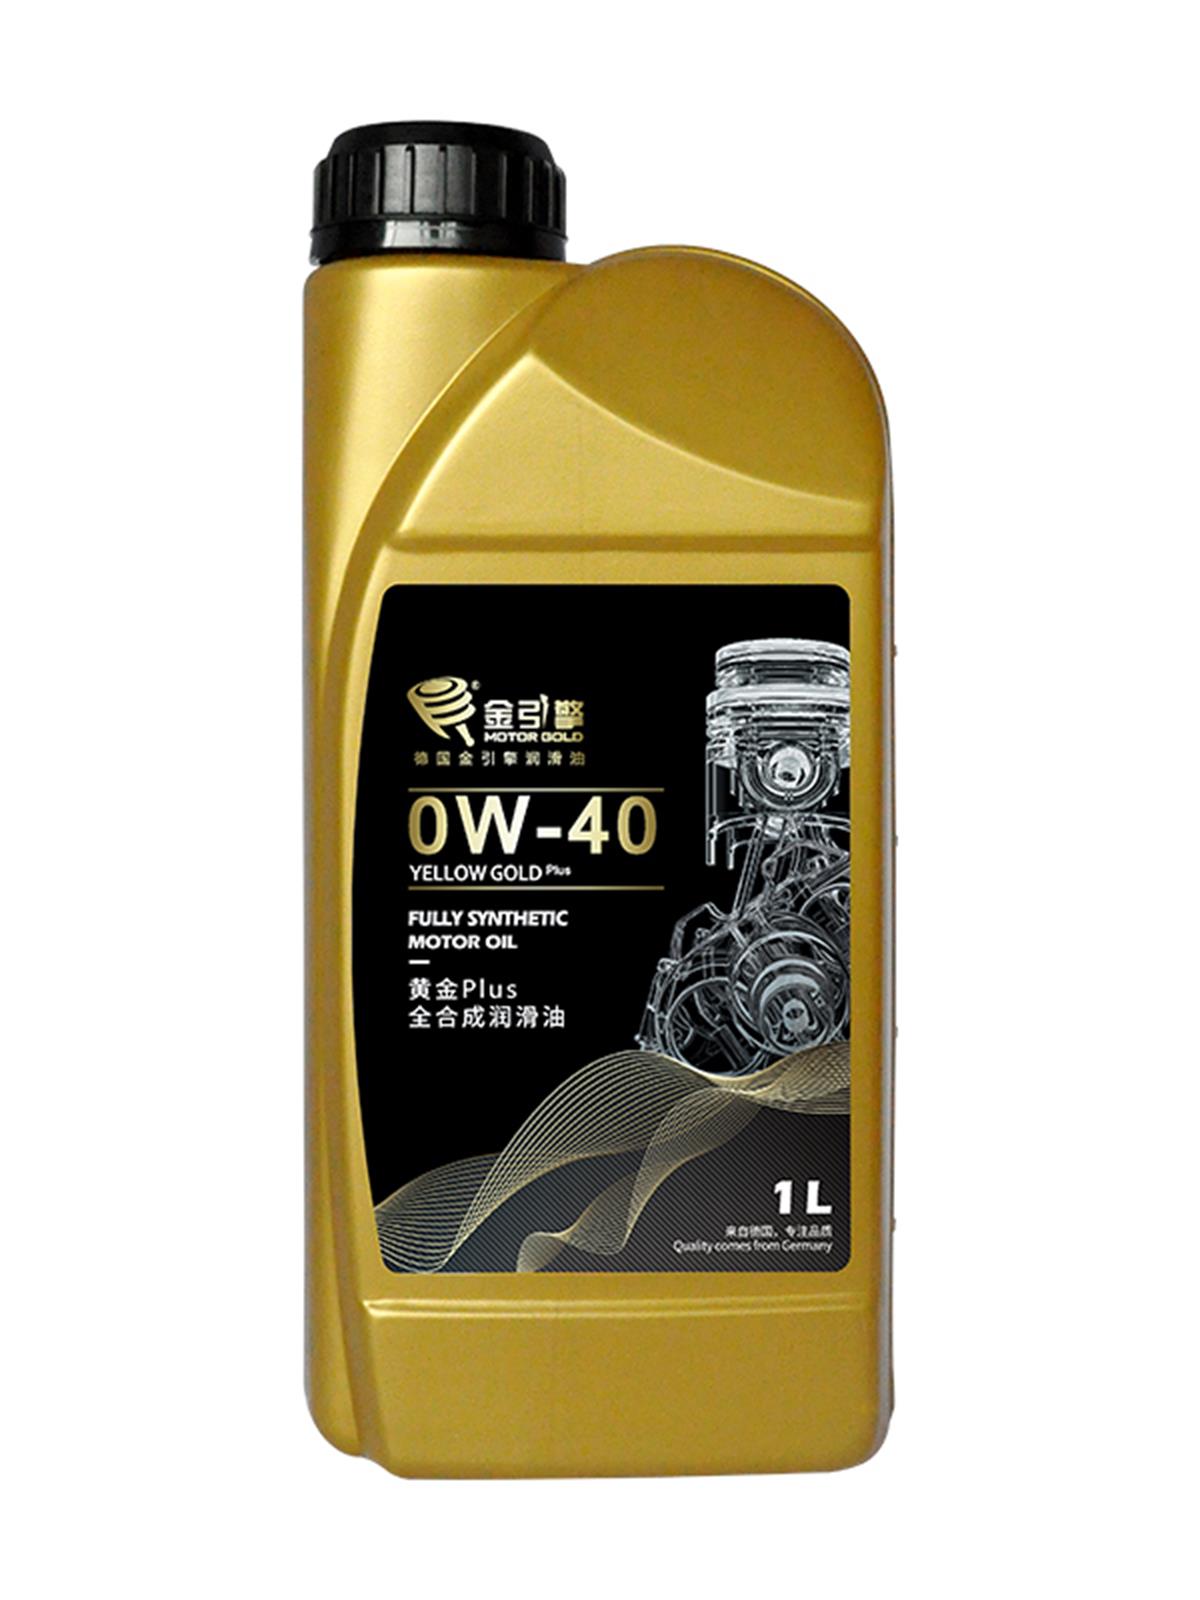 黄金Plus 0W-40 全合成润滑油